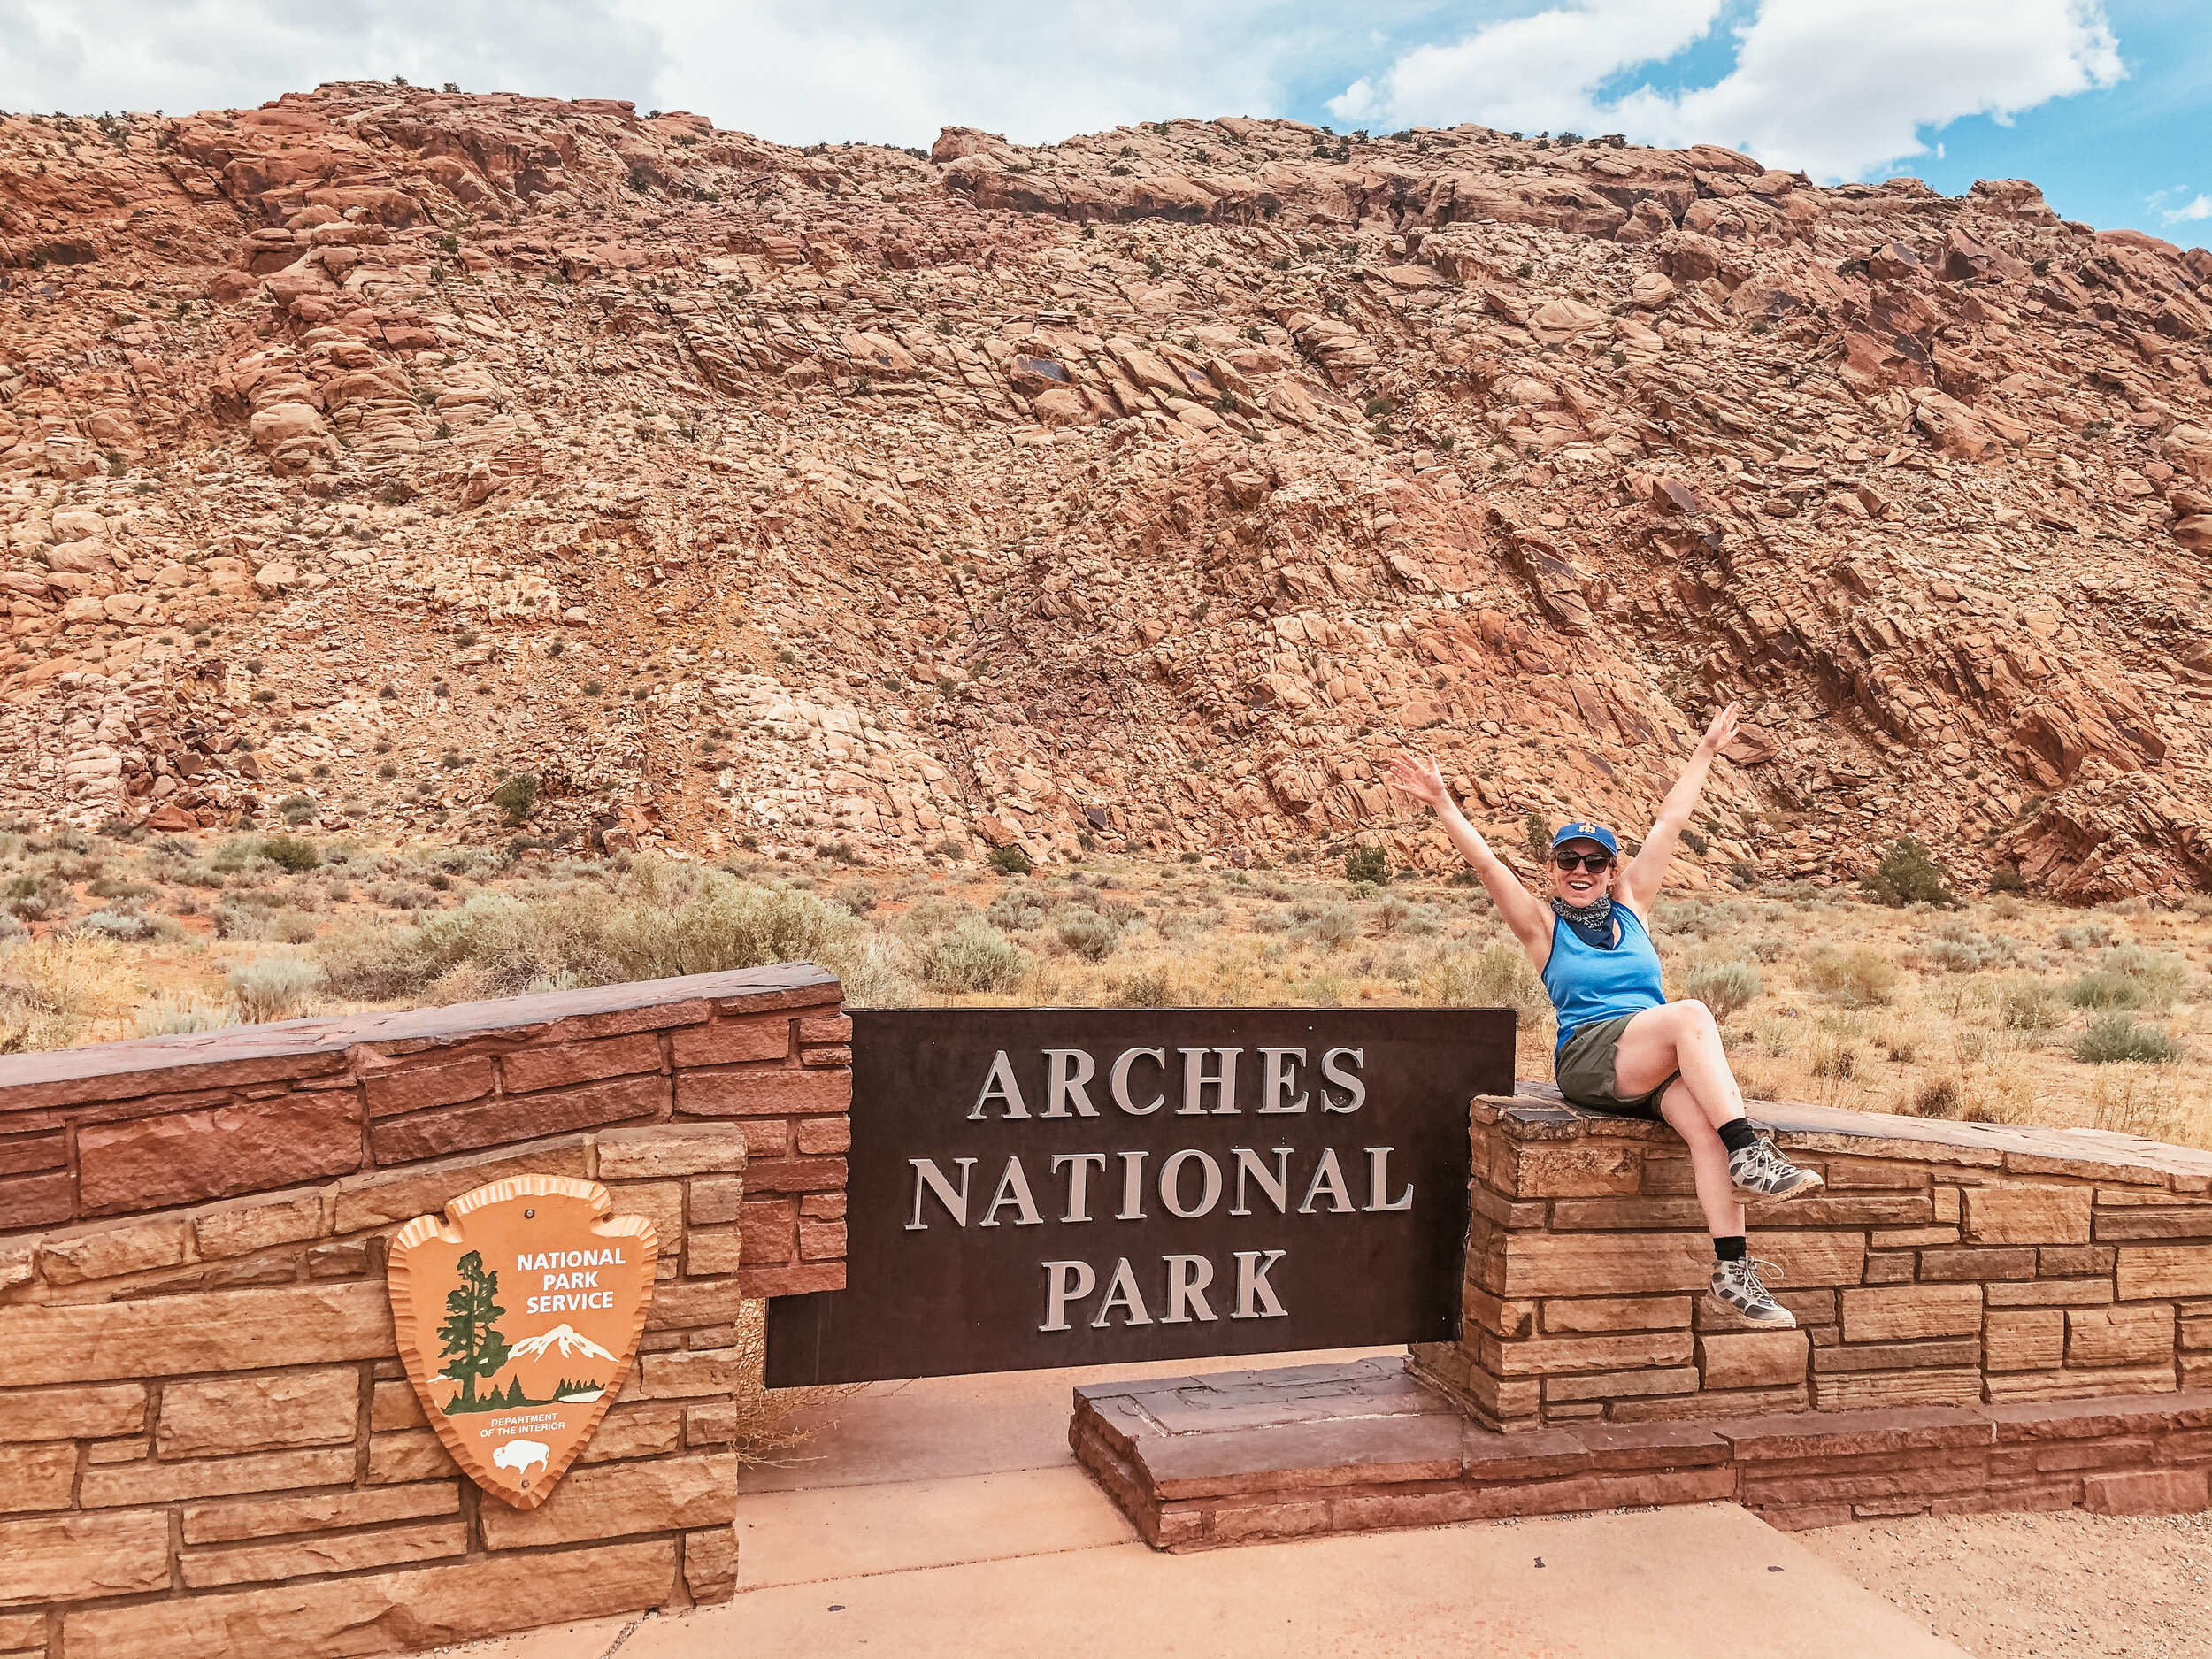 Arches National Park Entrance